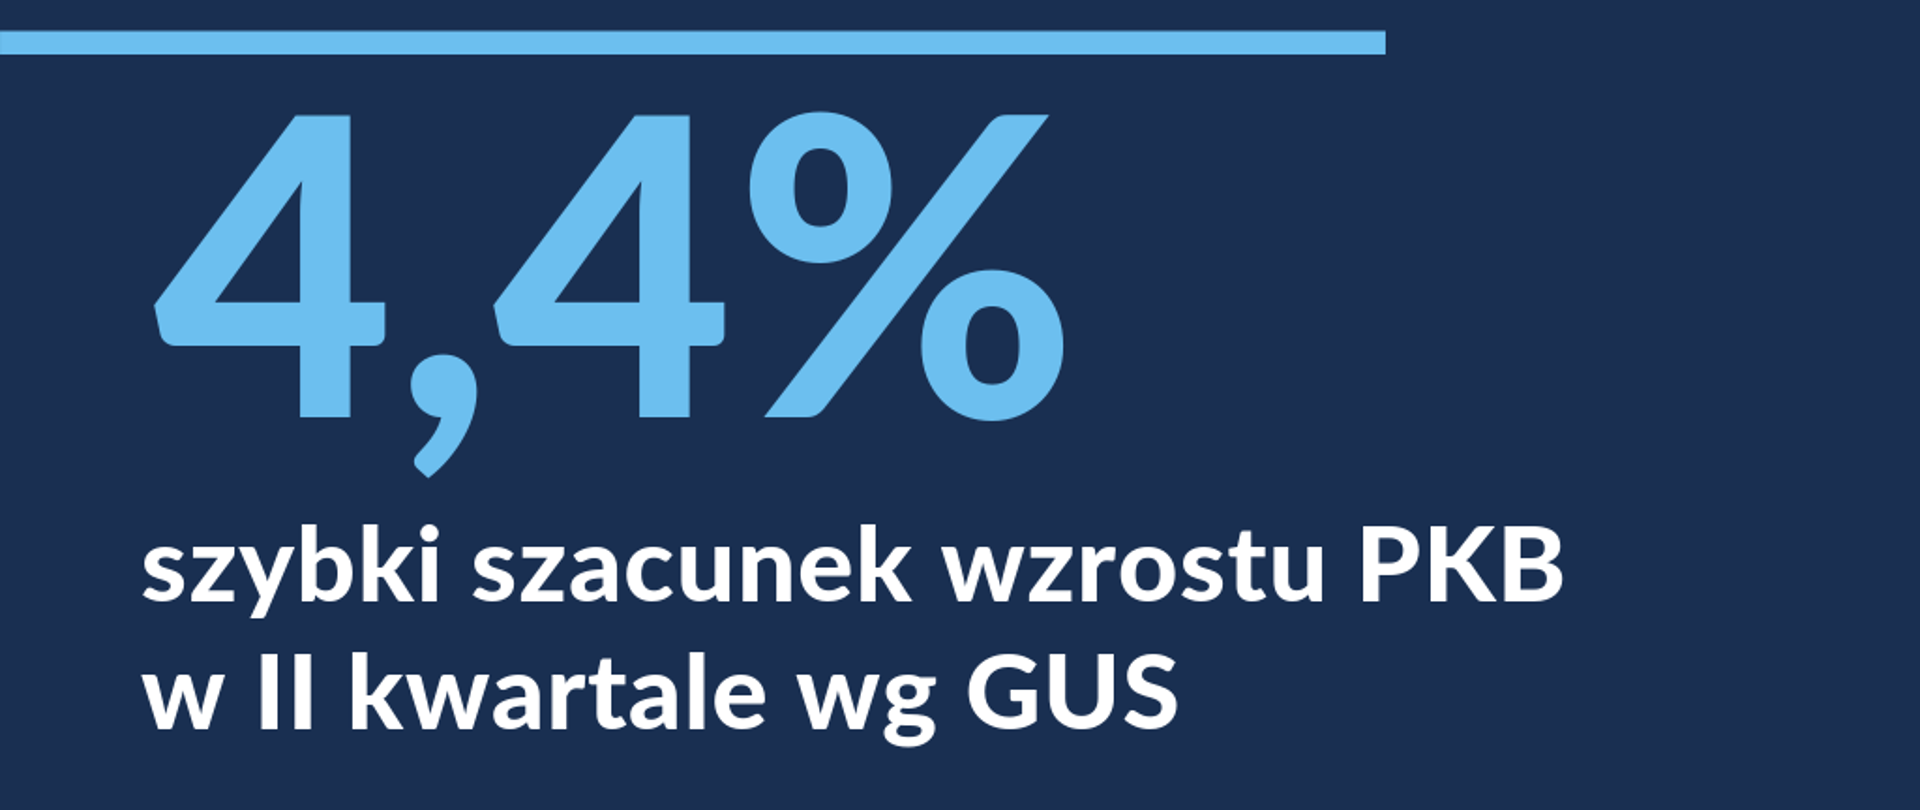 Grafika z napisem "4,4% szybki szacunek wzrostu PKB w II kwartale wg GUS"